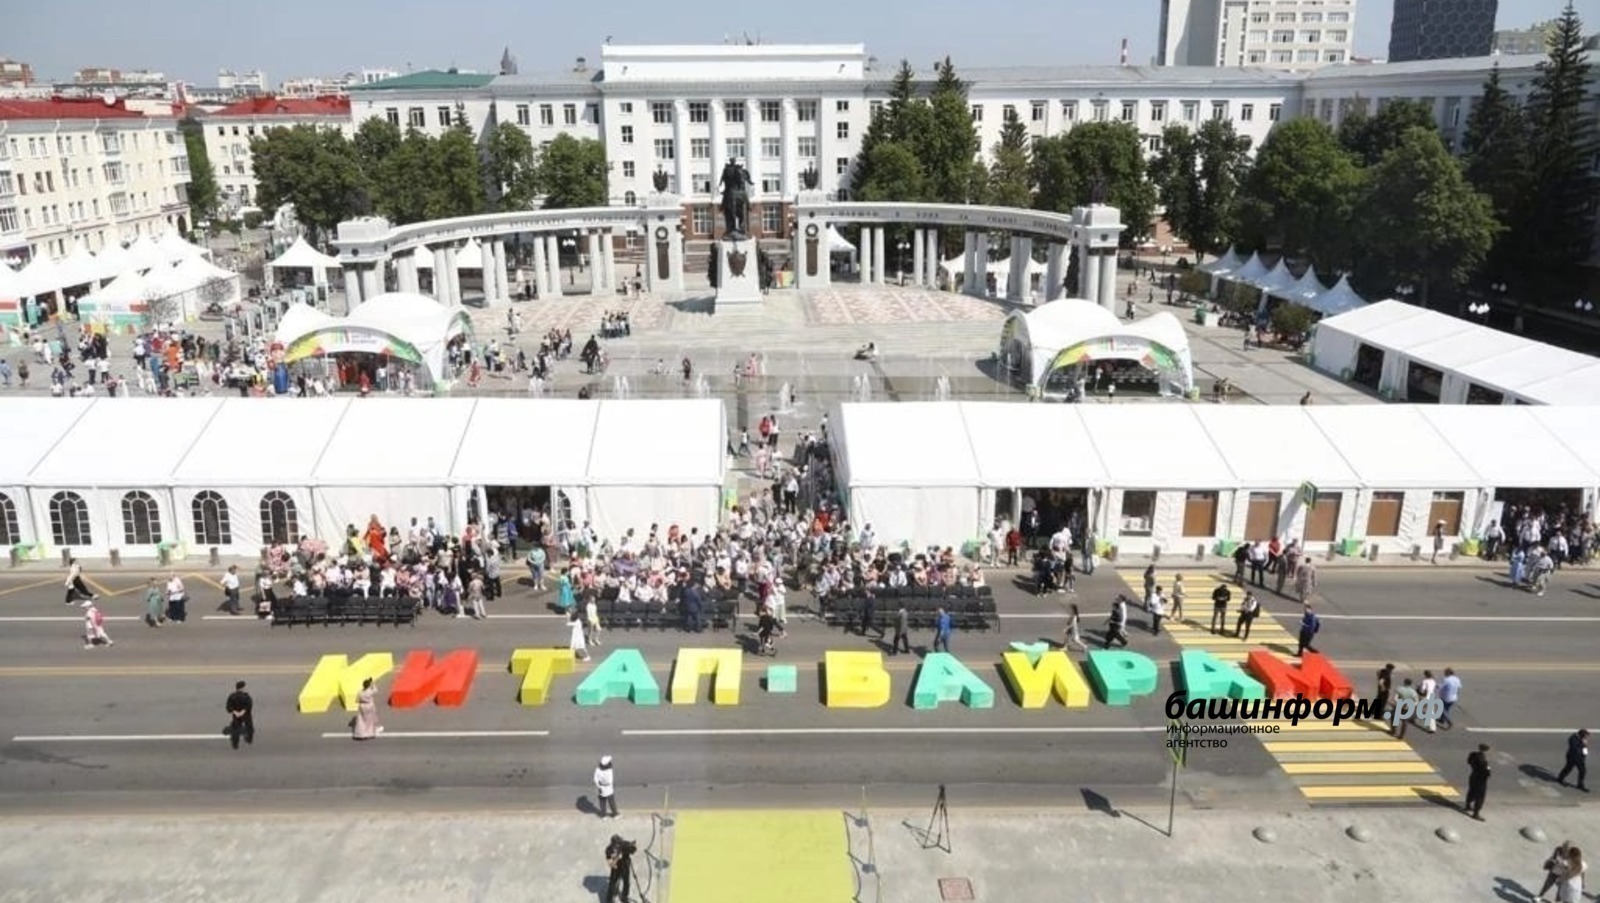 В Башкирии известные гости оценили ярмарку "Китап-байрам"